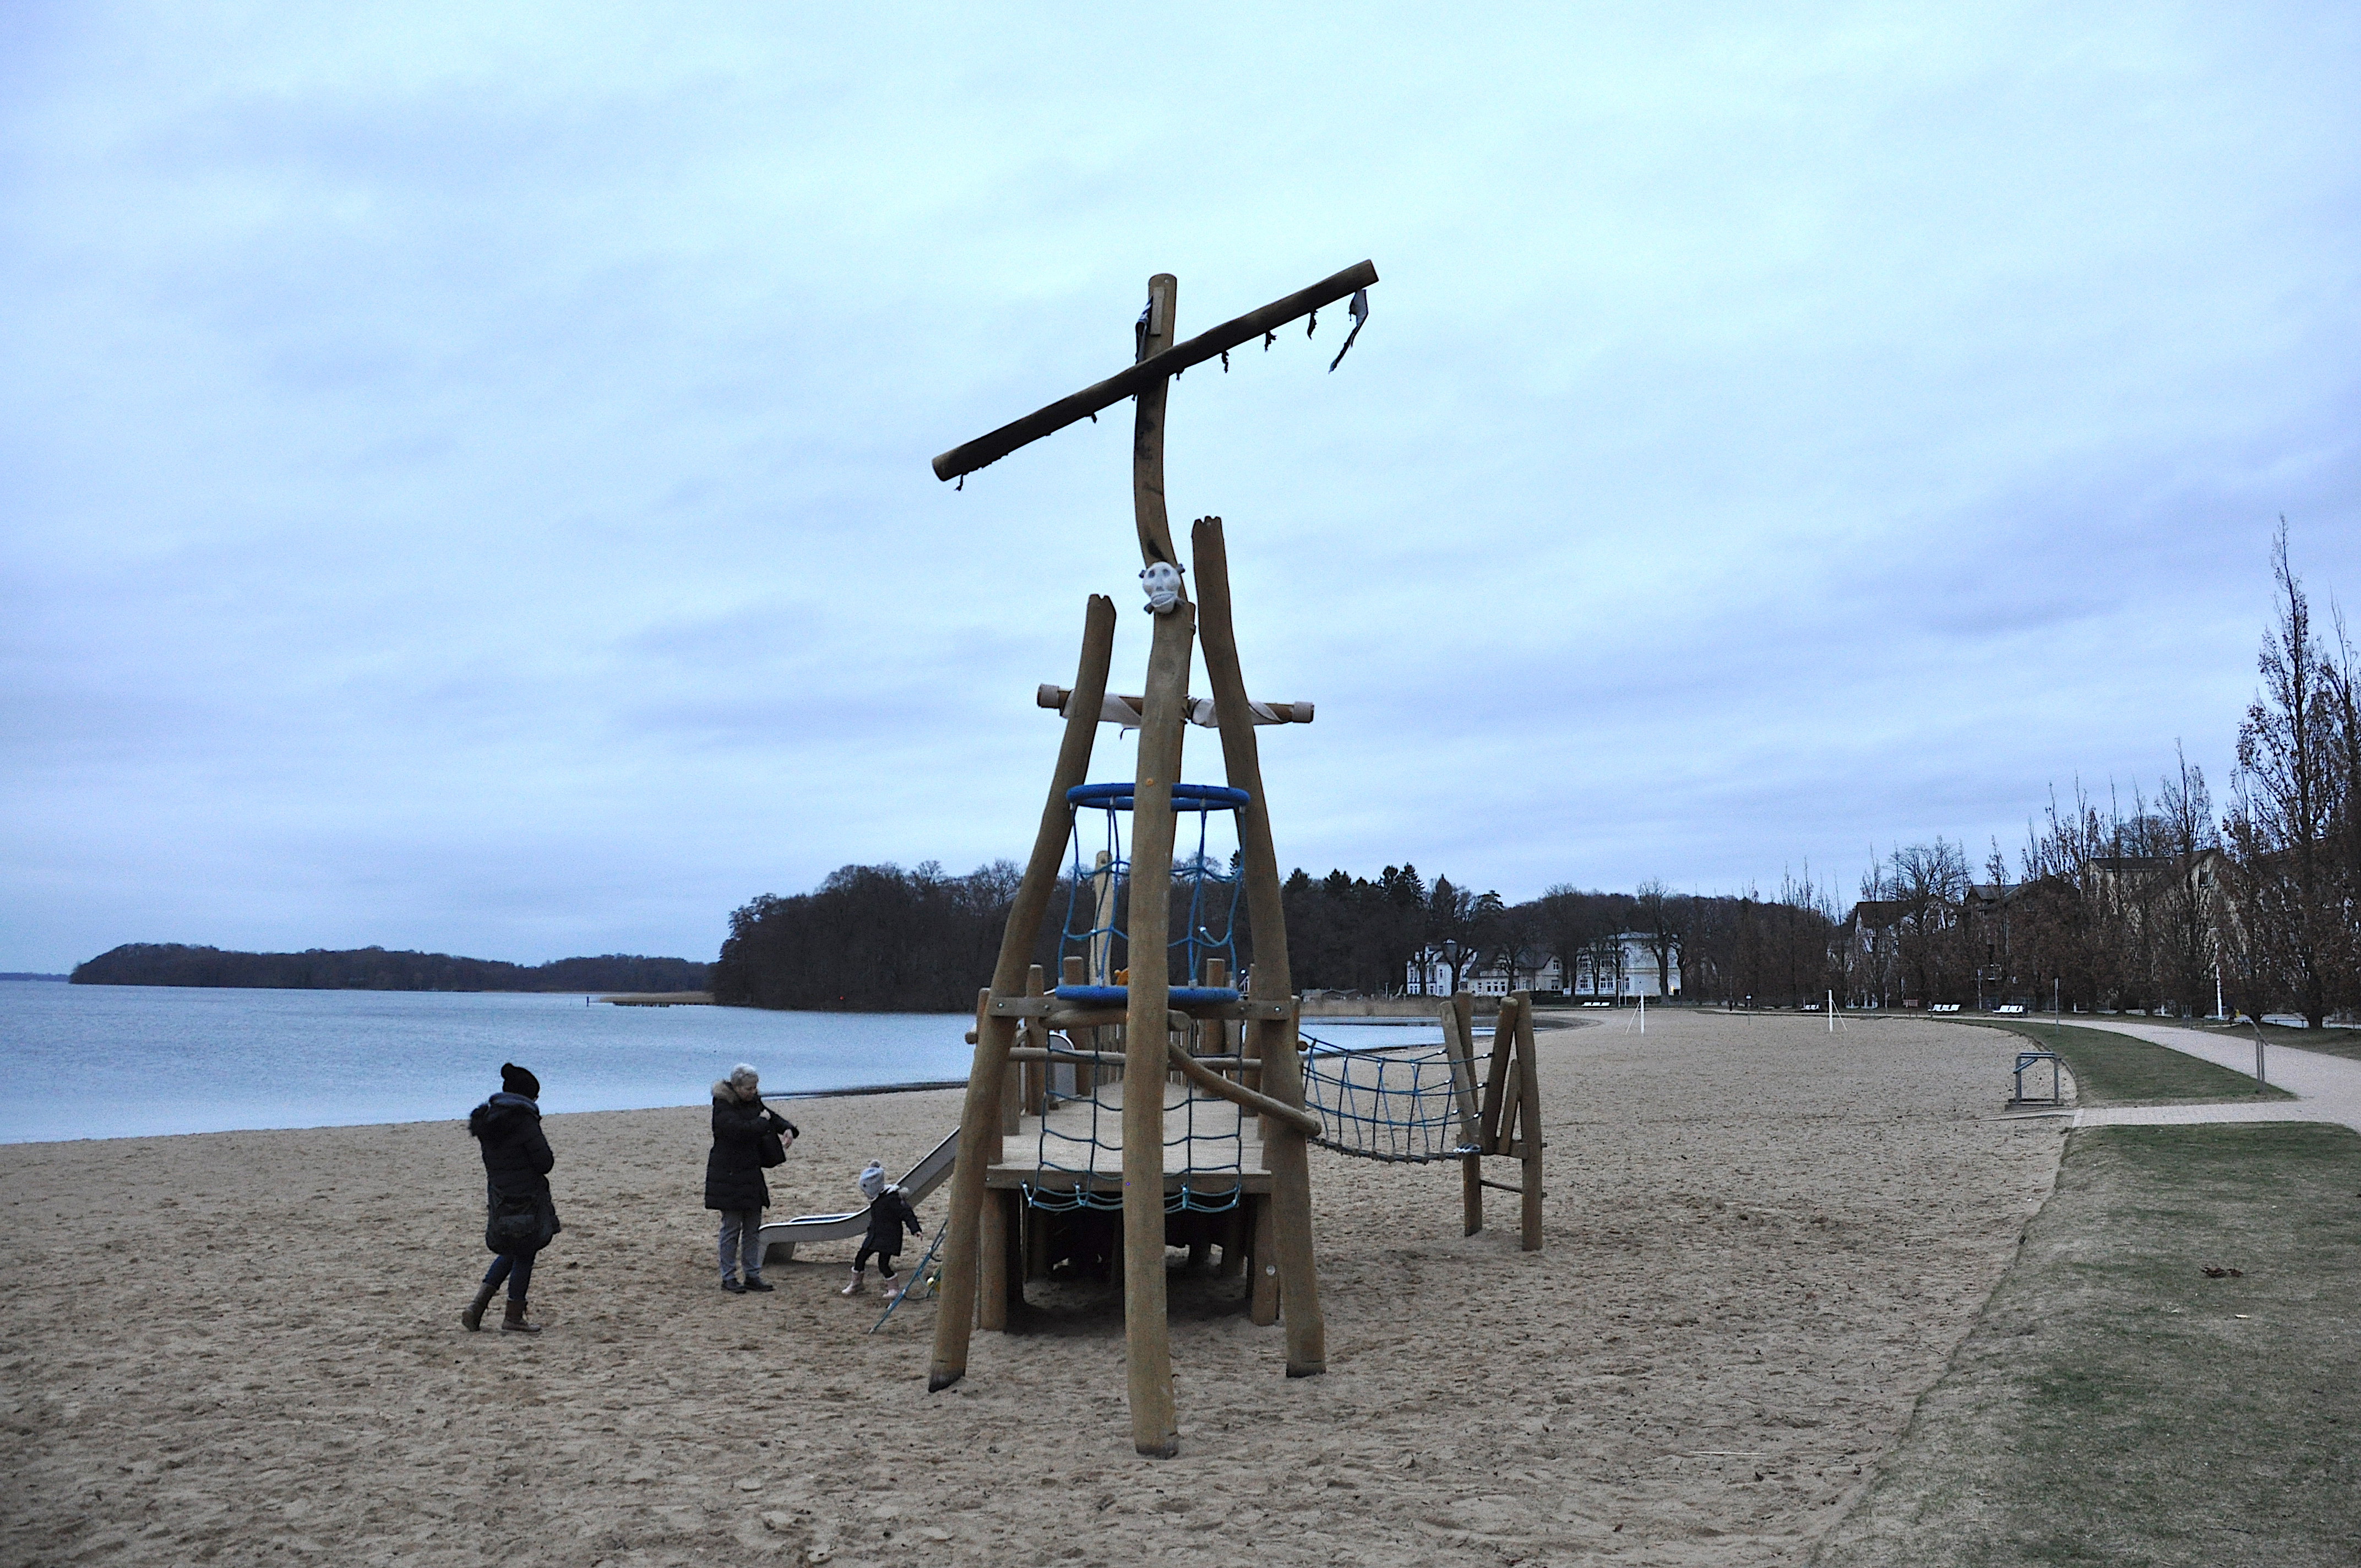 Attraktives Spielangebot am Zippendorfer Strand von Unbekannten zerstört